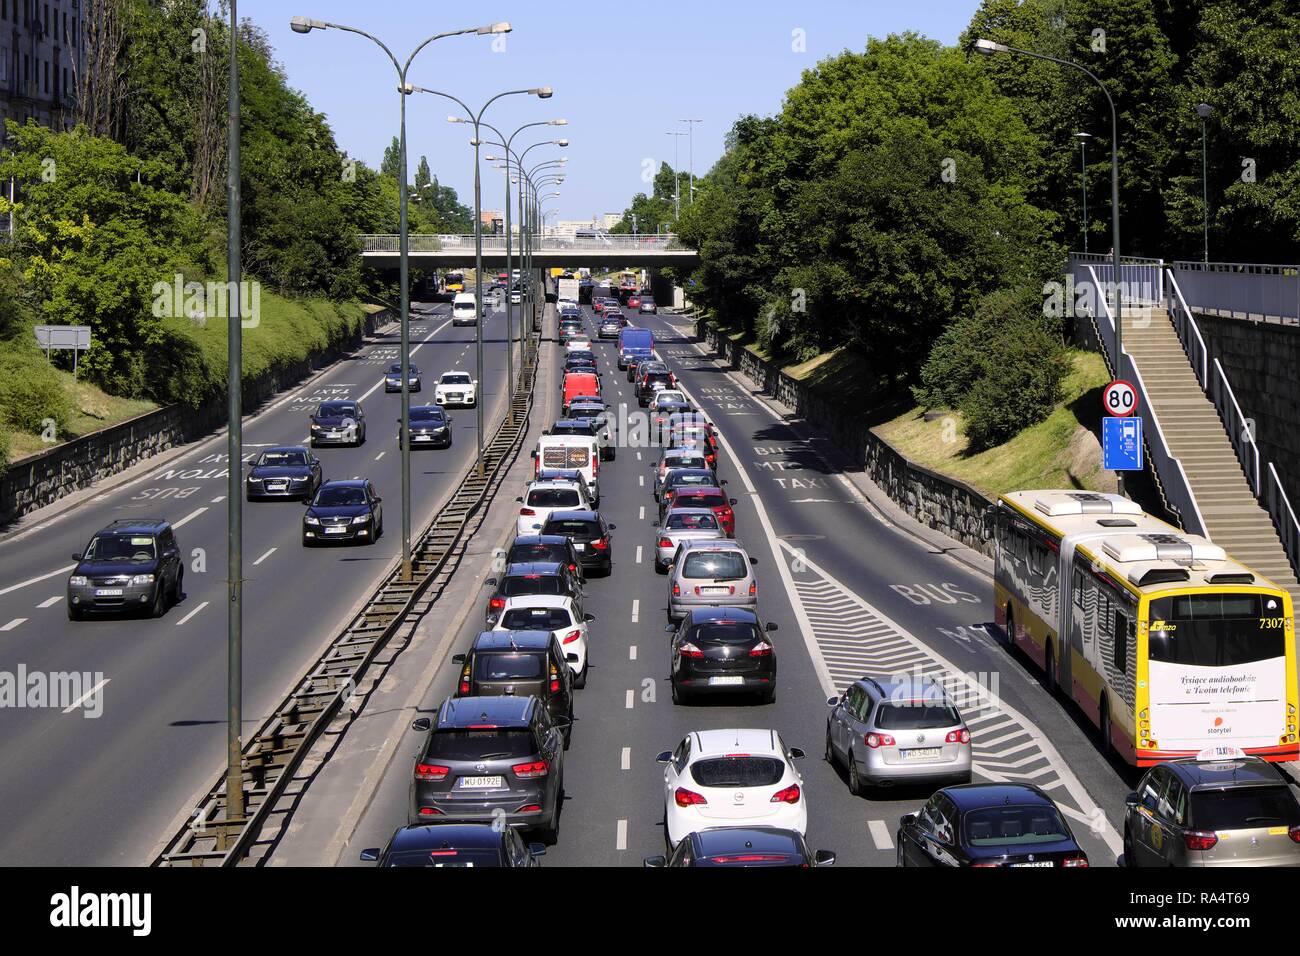 Varsavia, Mazovia / Polonia - 2018/06/07: il traffico pesante e gli ingorghi di traffico a Trasa Lazienkowska boulevard, arteria che collega la parte occidentale e quella orientale di Varsavia Foto Stock